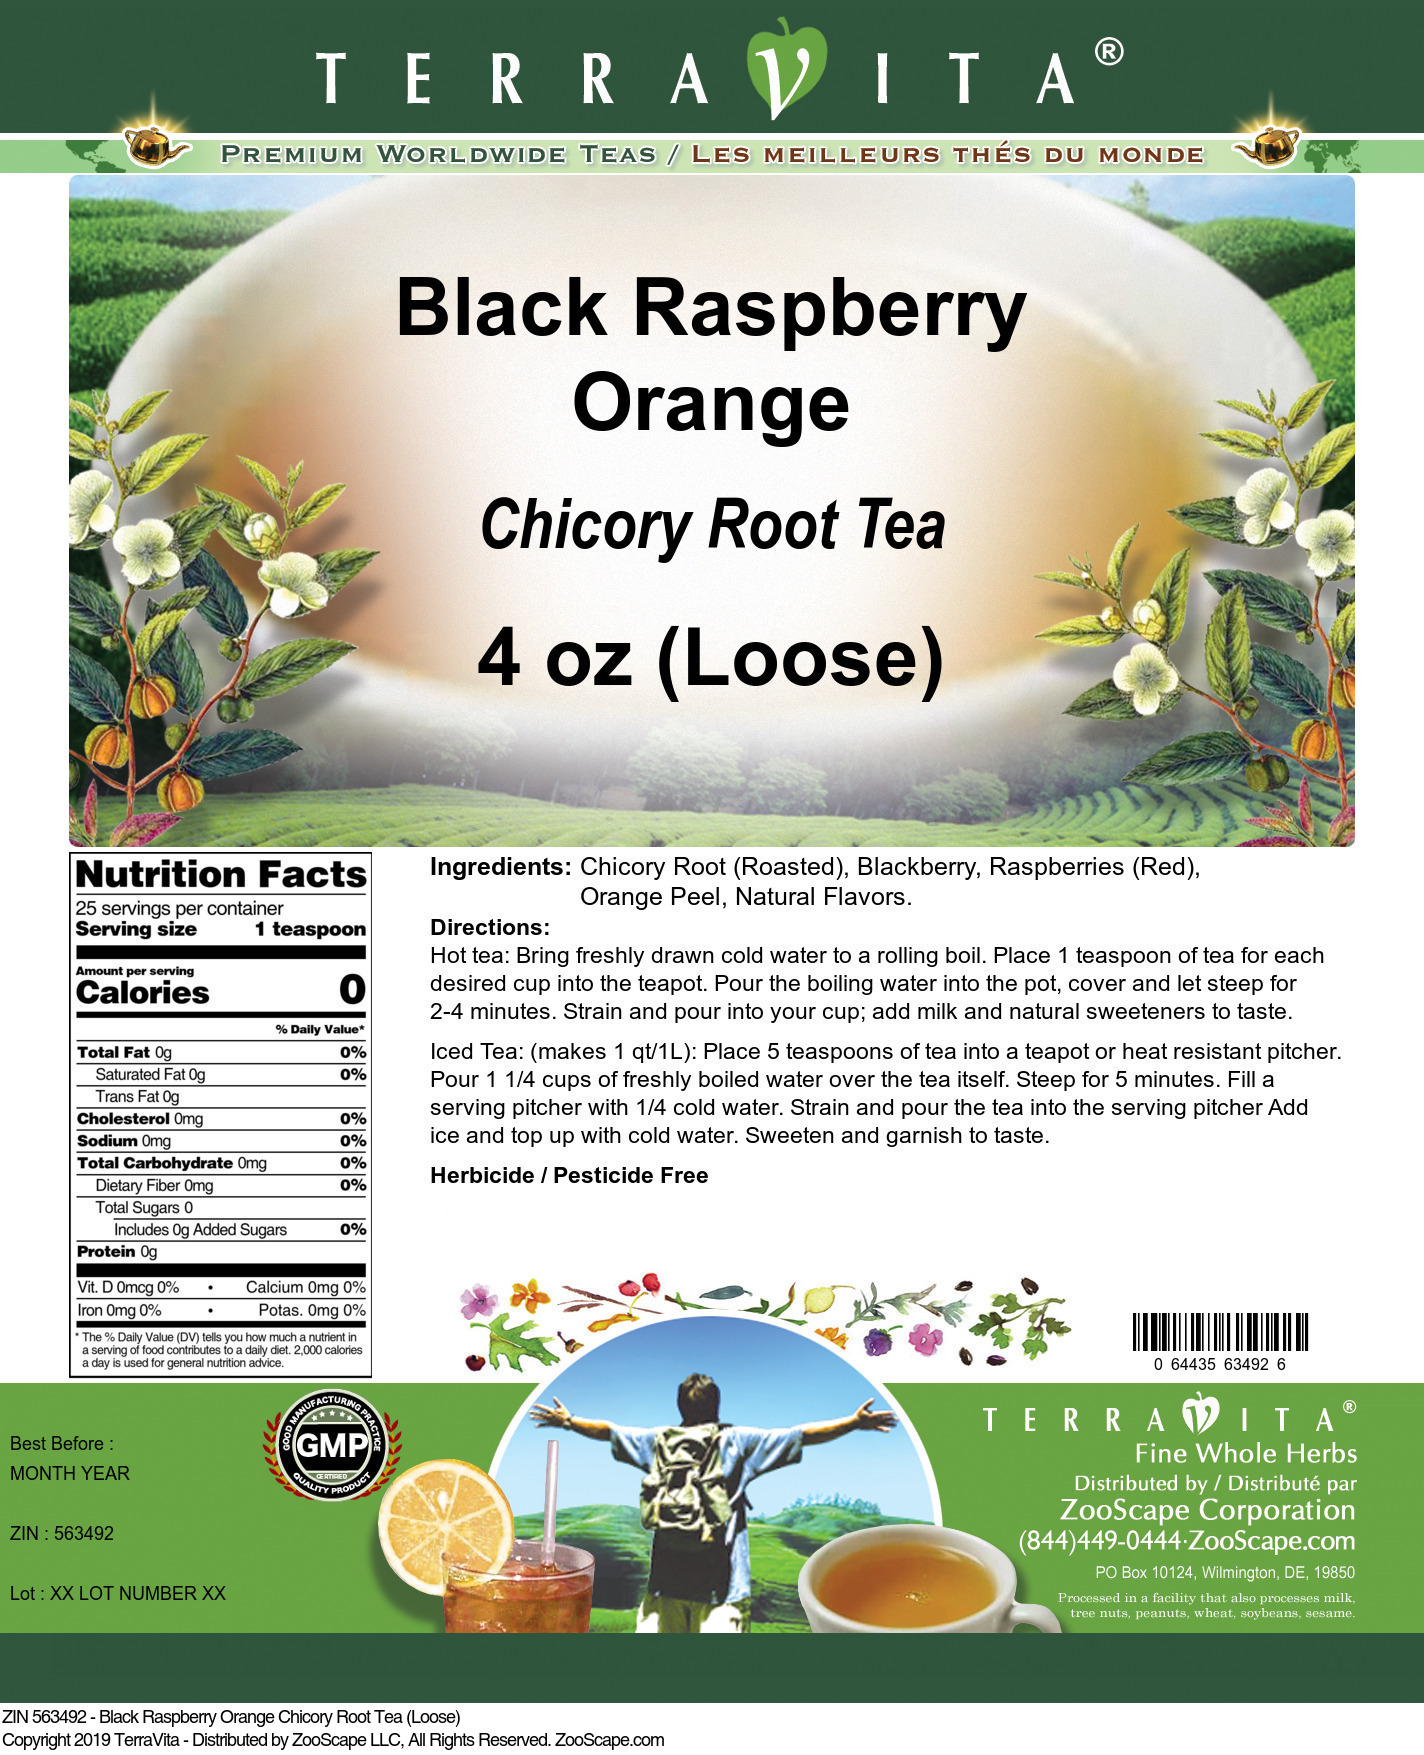 Black Raspberry Orange Chicory Root Tea (Loose) - Label